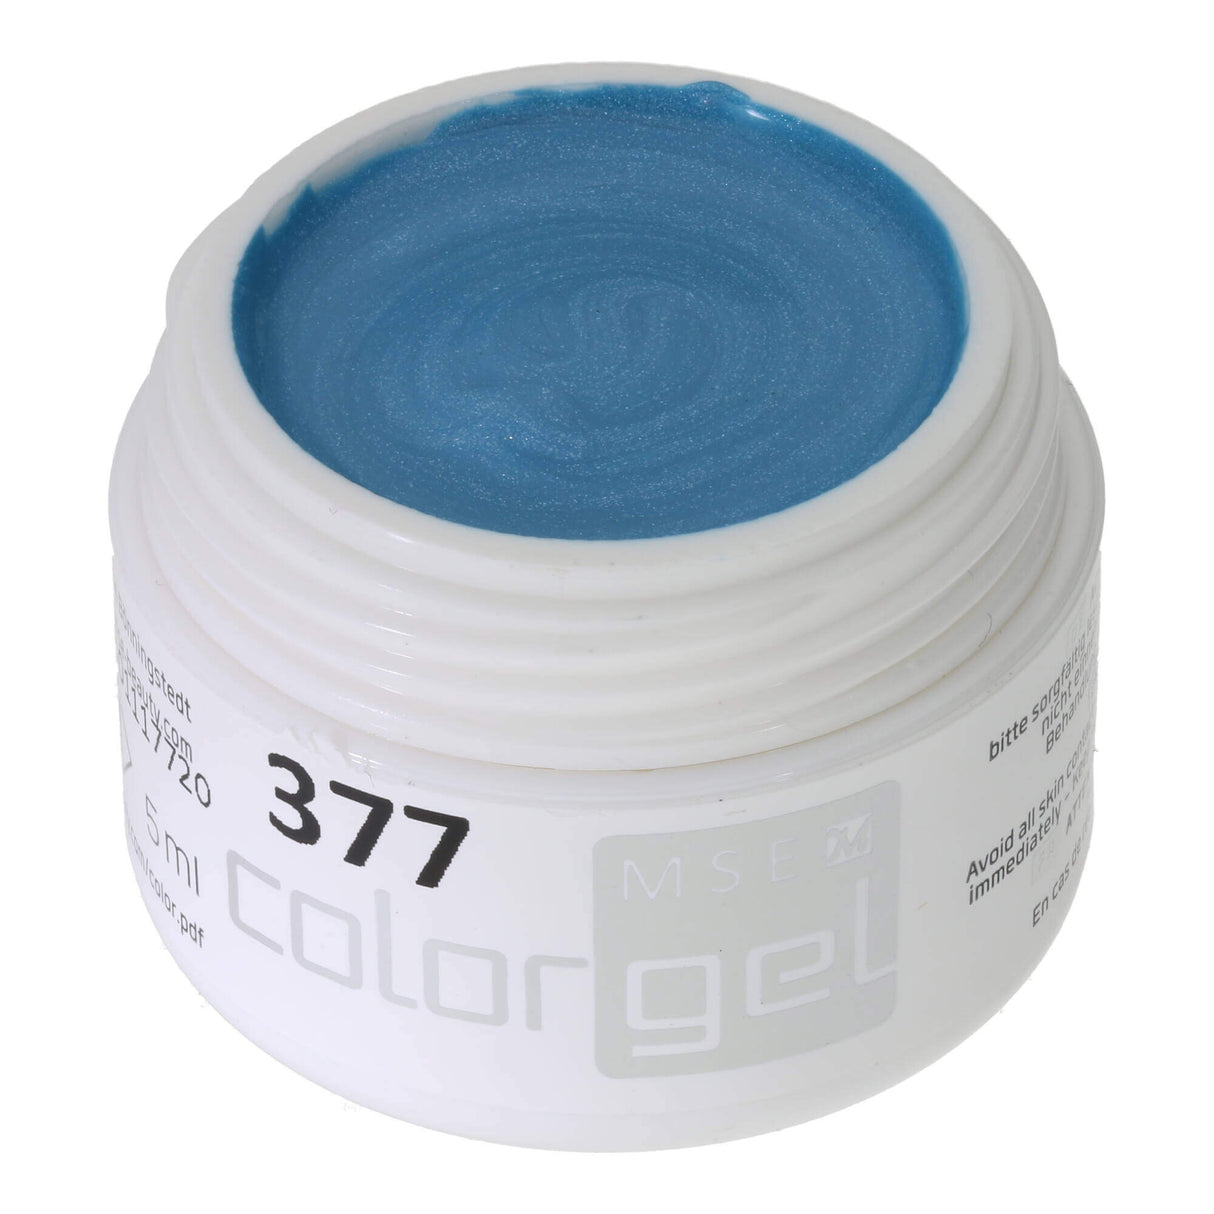 # 377 Premium-EFFEKT Color Gel 5ml Túi vừa với ánh sáng lung linh huyền ảo